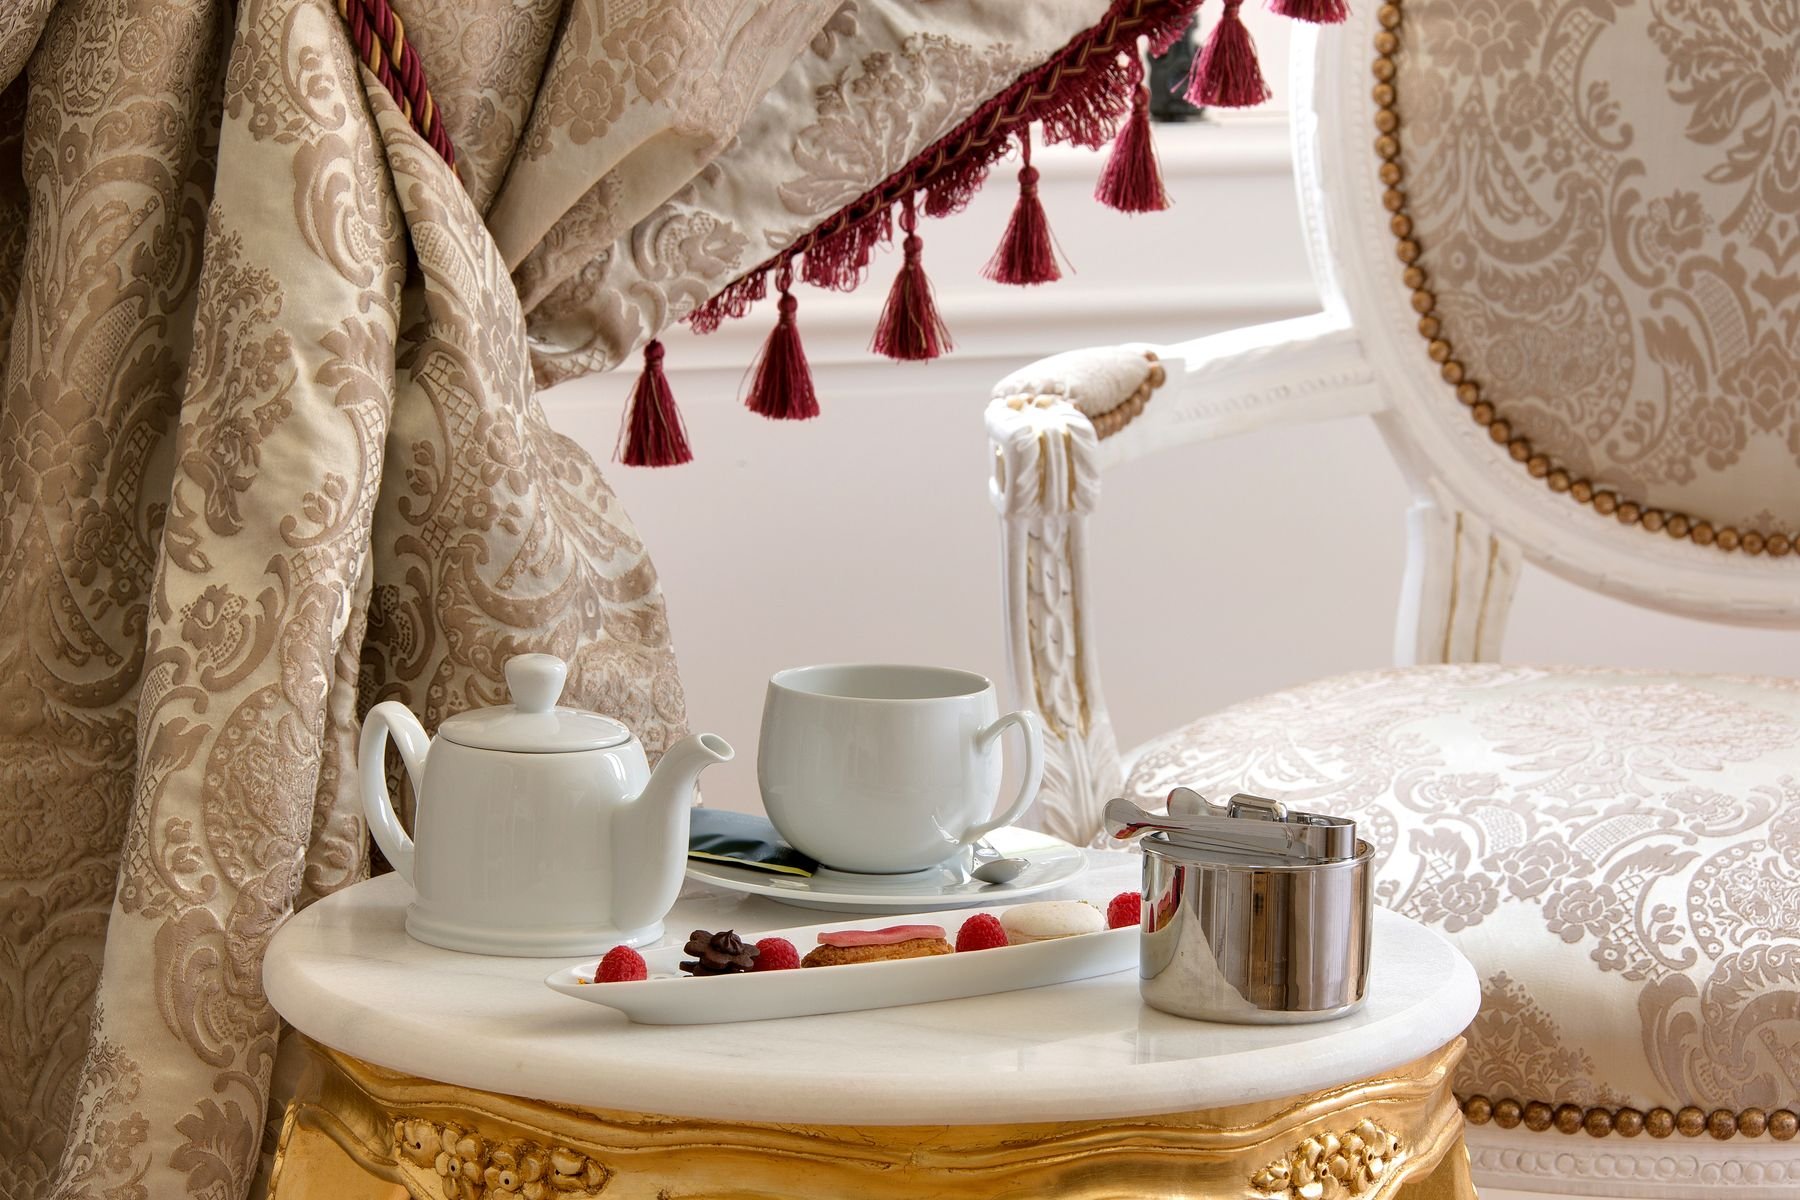 Hôtel Alexandra Palace ***** | chambres d'hôtel de luxe France | Chambre Deluxe